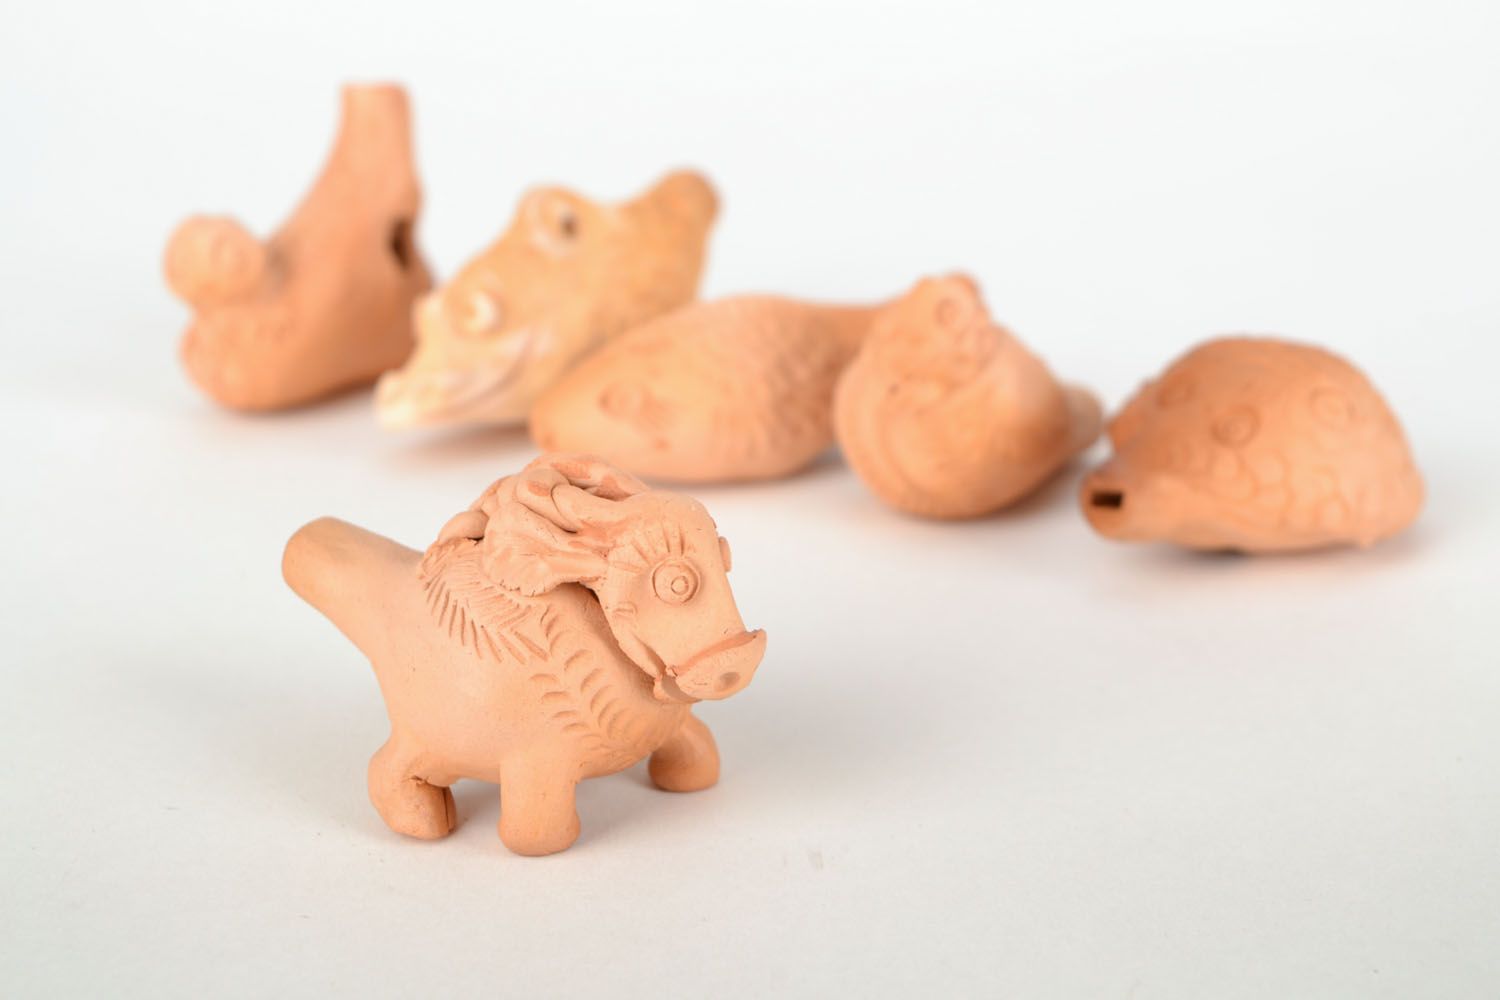 Apito de argila brinquedo de cerâmica artesanal em forma do carneiro  foto 1